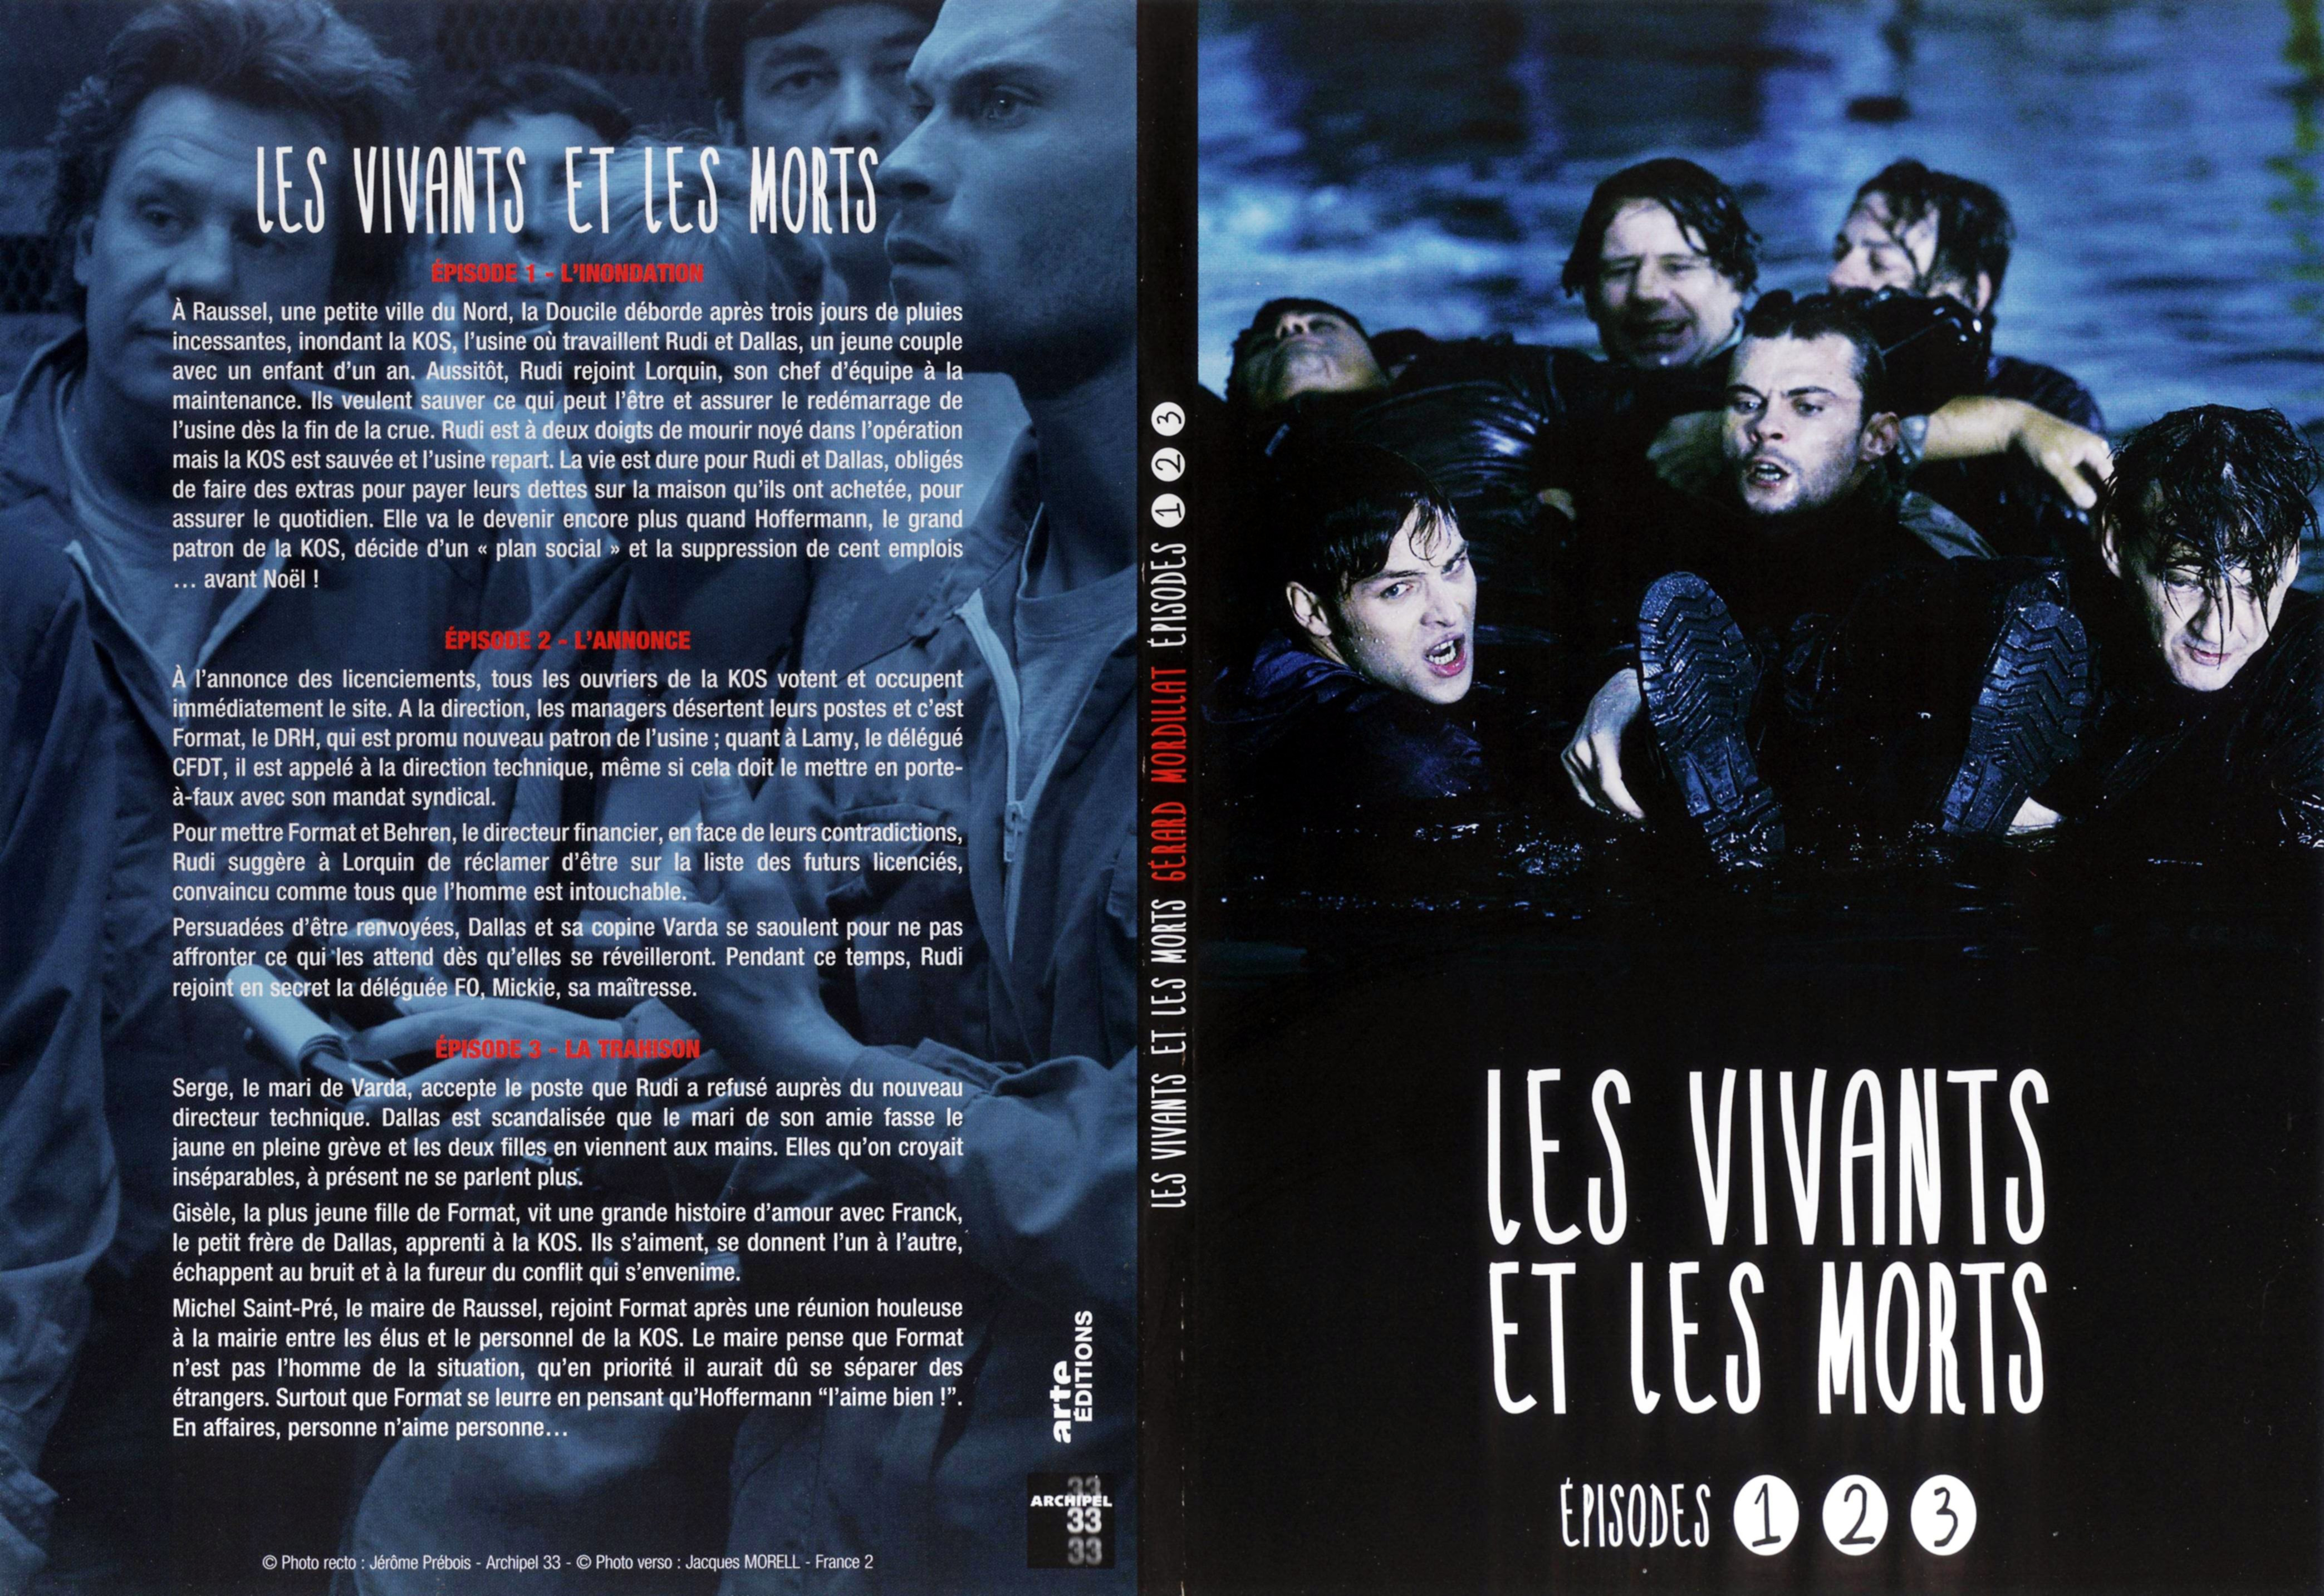 Jaquette DVD Les vivants et les morts DVD 01